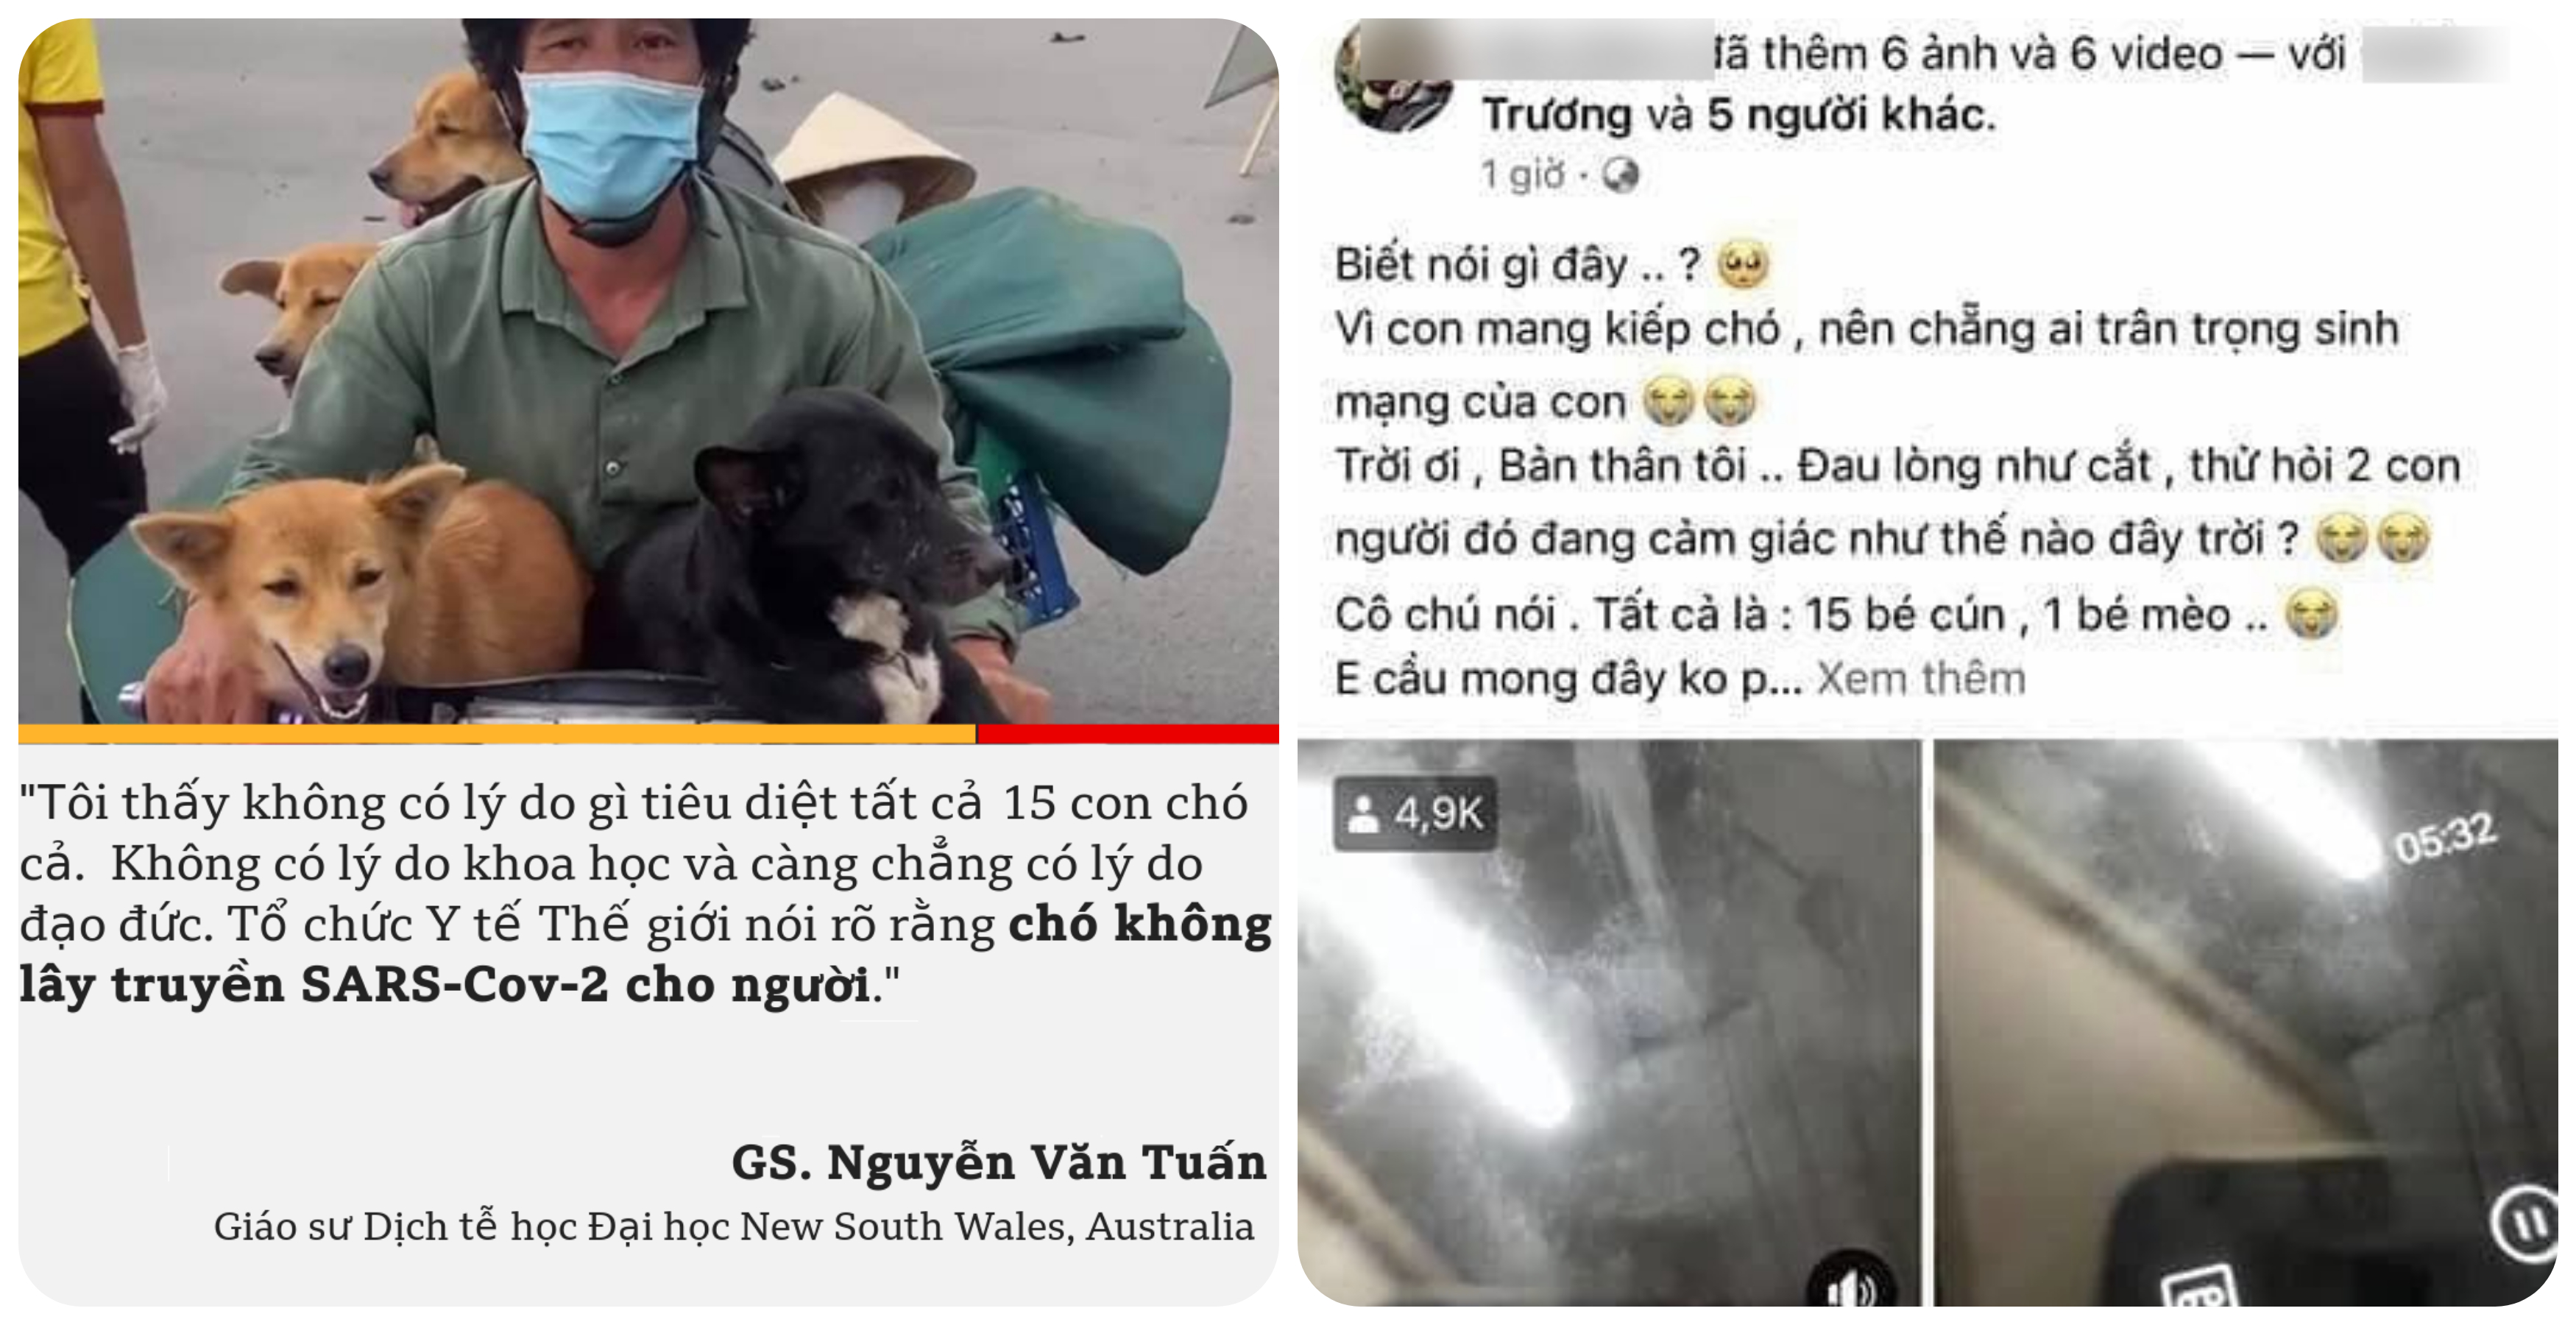 Vụ tiêu hủy 15 chú chó ở Cà Mau: Trưởng trạm y tế và con ruột xin nghỉ việc vì không chịu nổi áp lực dư luận - Ảnh 1